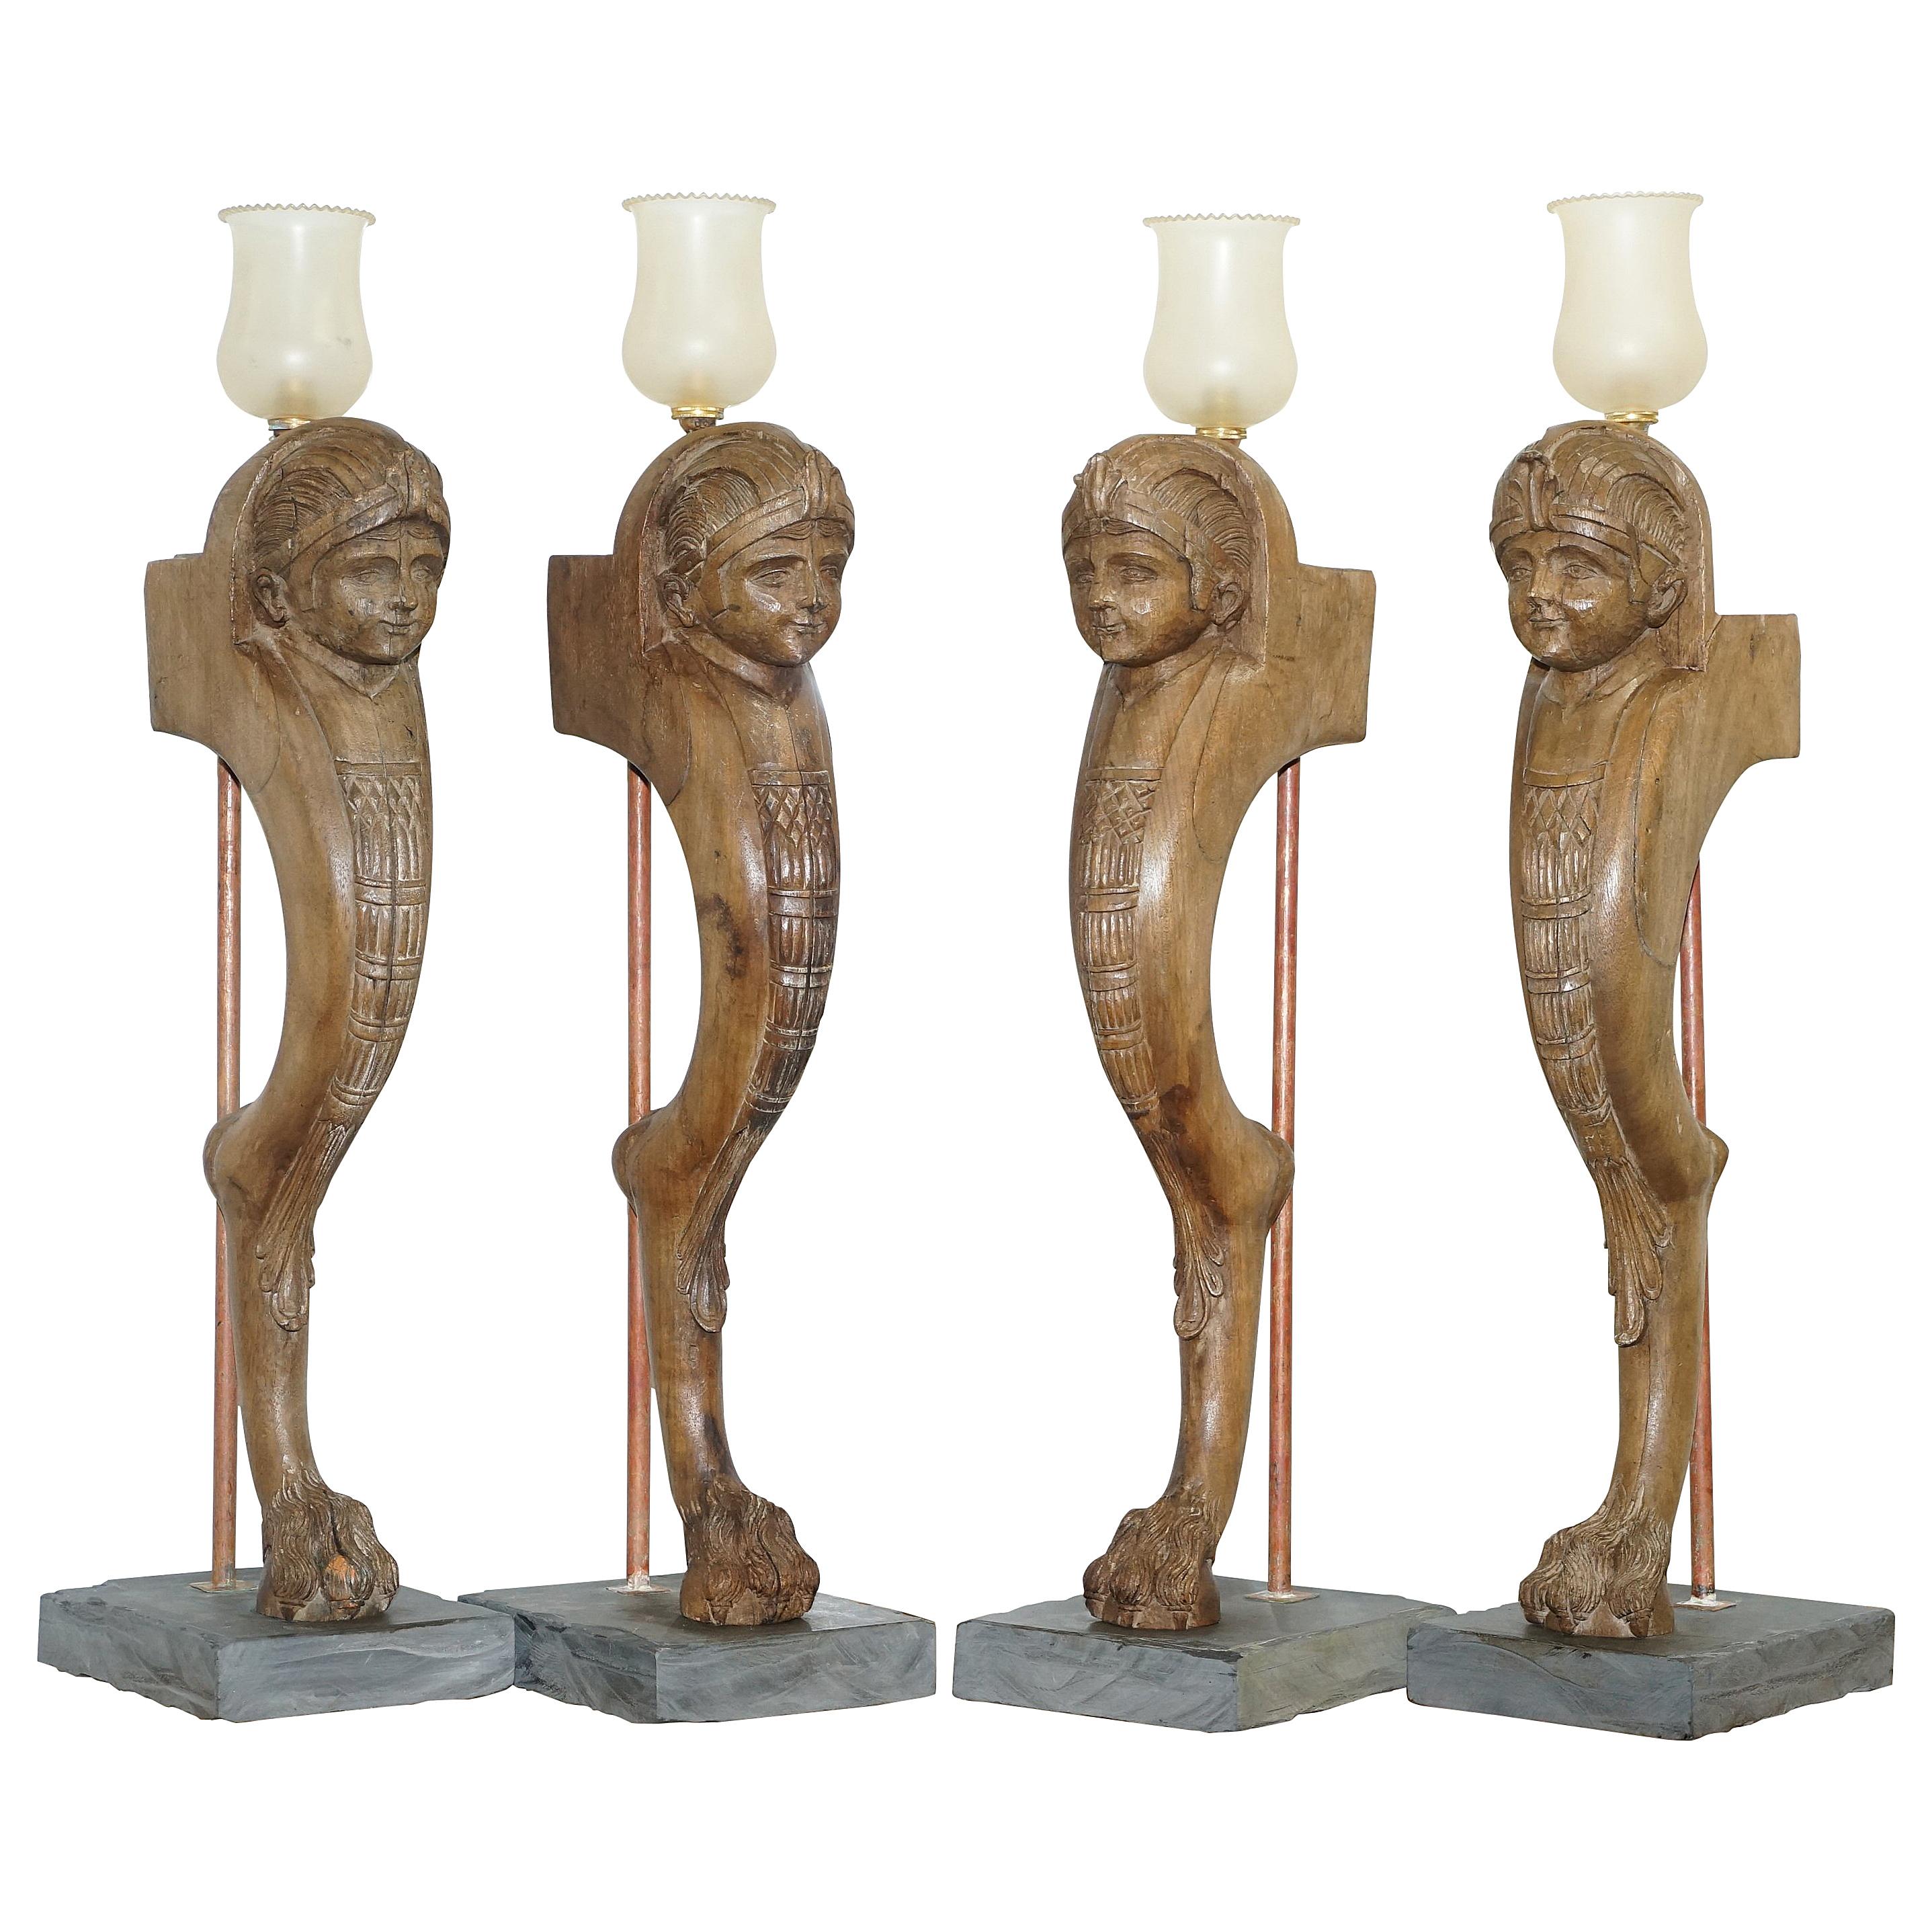 4 rares lampes monopodes néoclassiques françaises Louis xviii de 1820 avec pieds en pattes de lion 